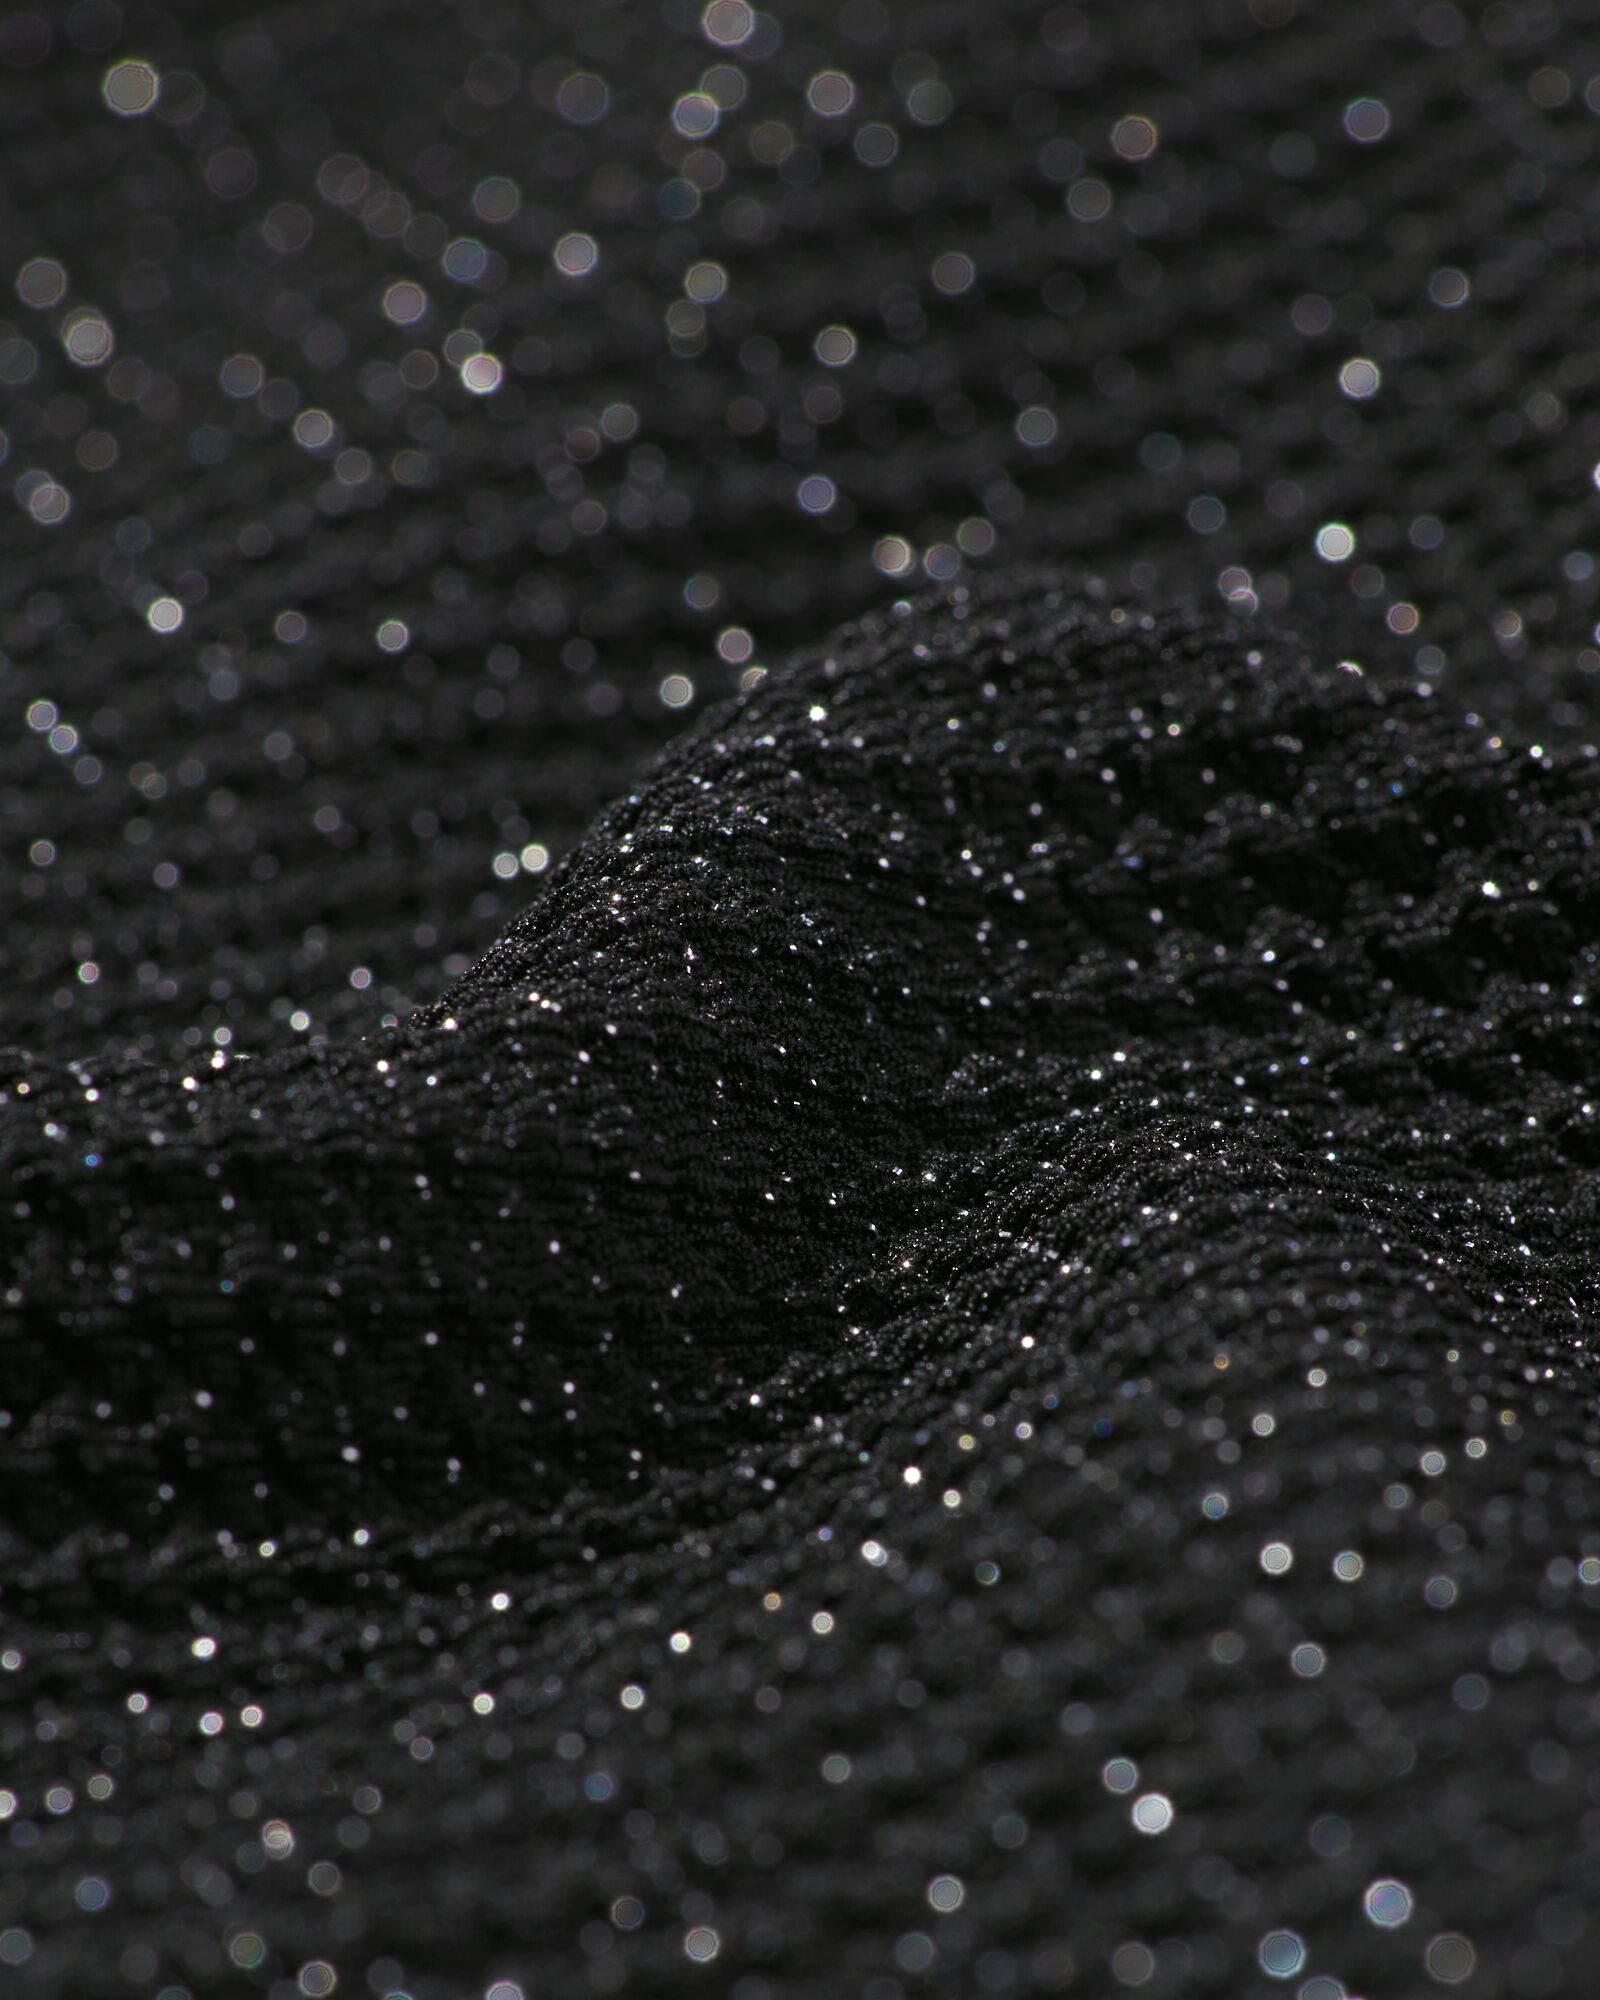 pantalon enfant avec paillettes noir noir - 30824002BLACK - HEMA